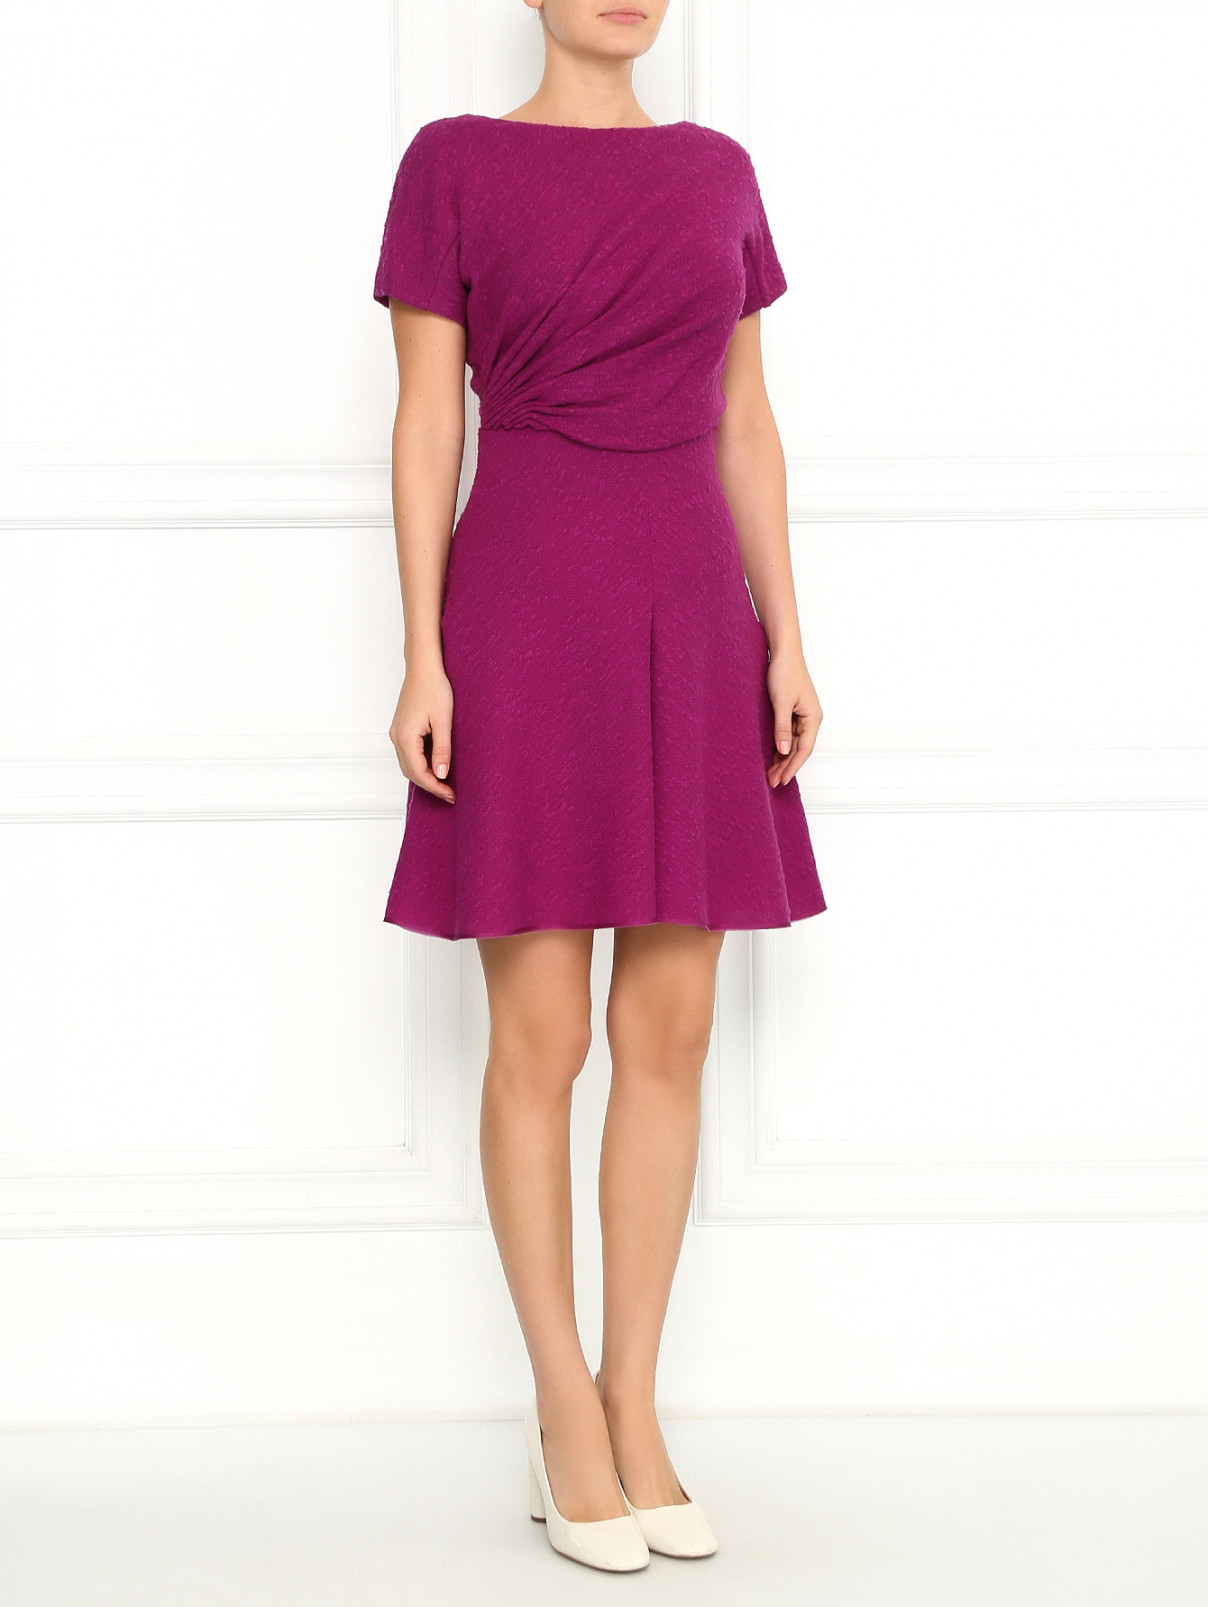 Платье-мини из шерсти с драпировкой Giambattista Valli  –  Модель Общий вид  – Цвет:  Фиолетовый